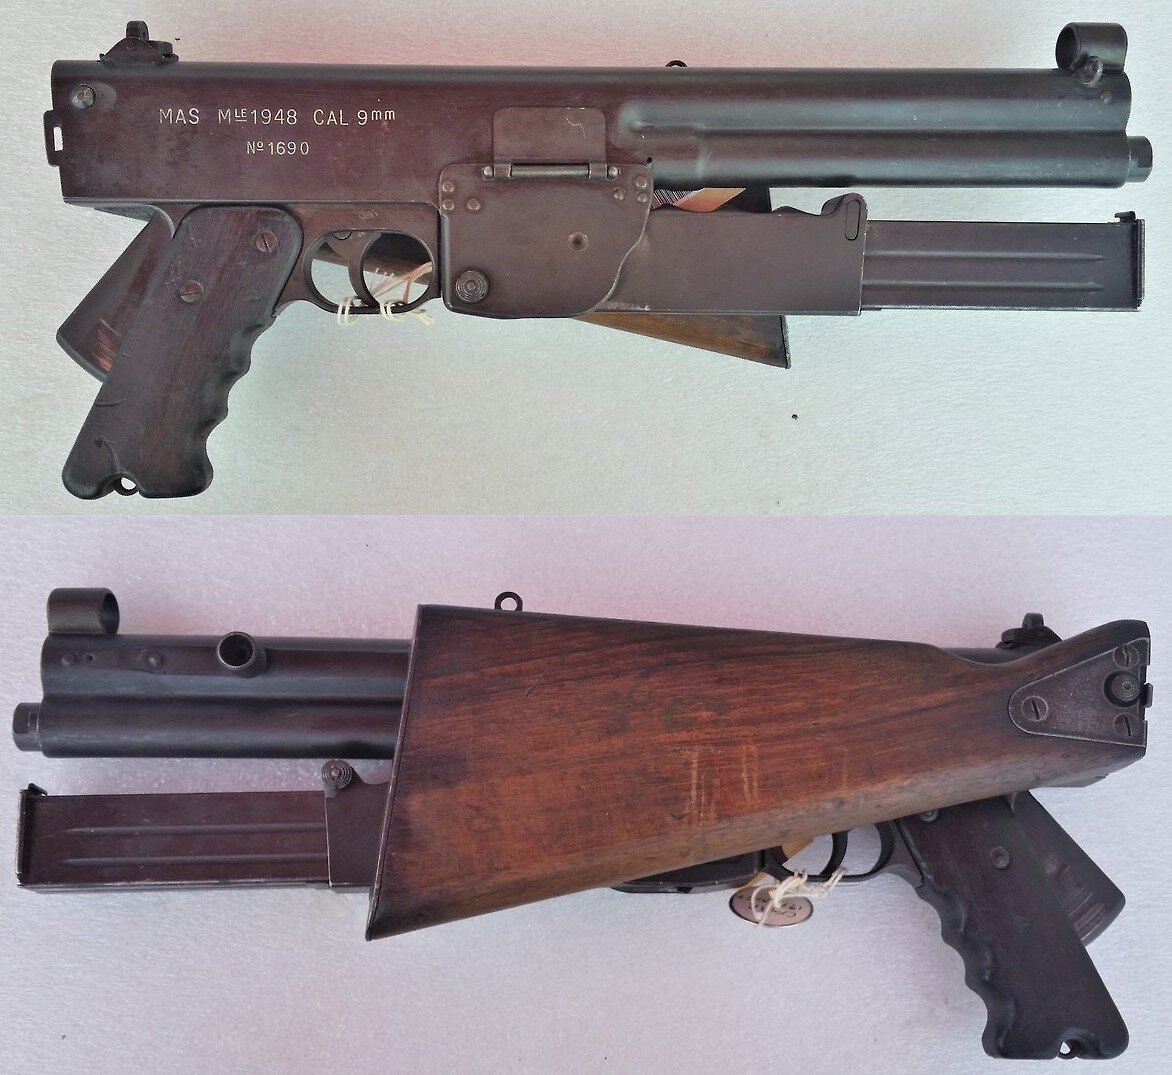 Пистолет-пулемет МАС-48 в сложенном виде. Обратите внимание на выжимную скобу-предохранитель и крышку, закрывающую окно для экстракции гильз.